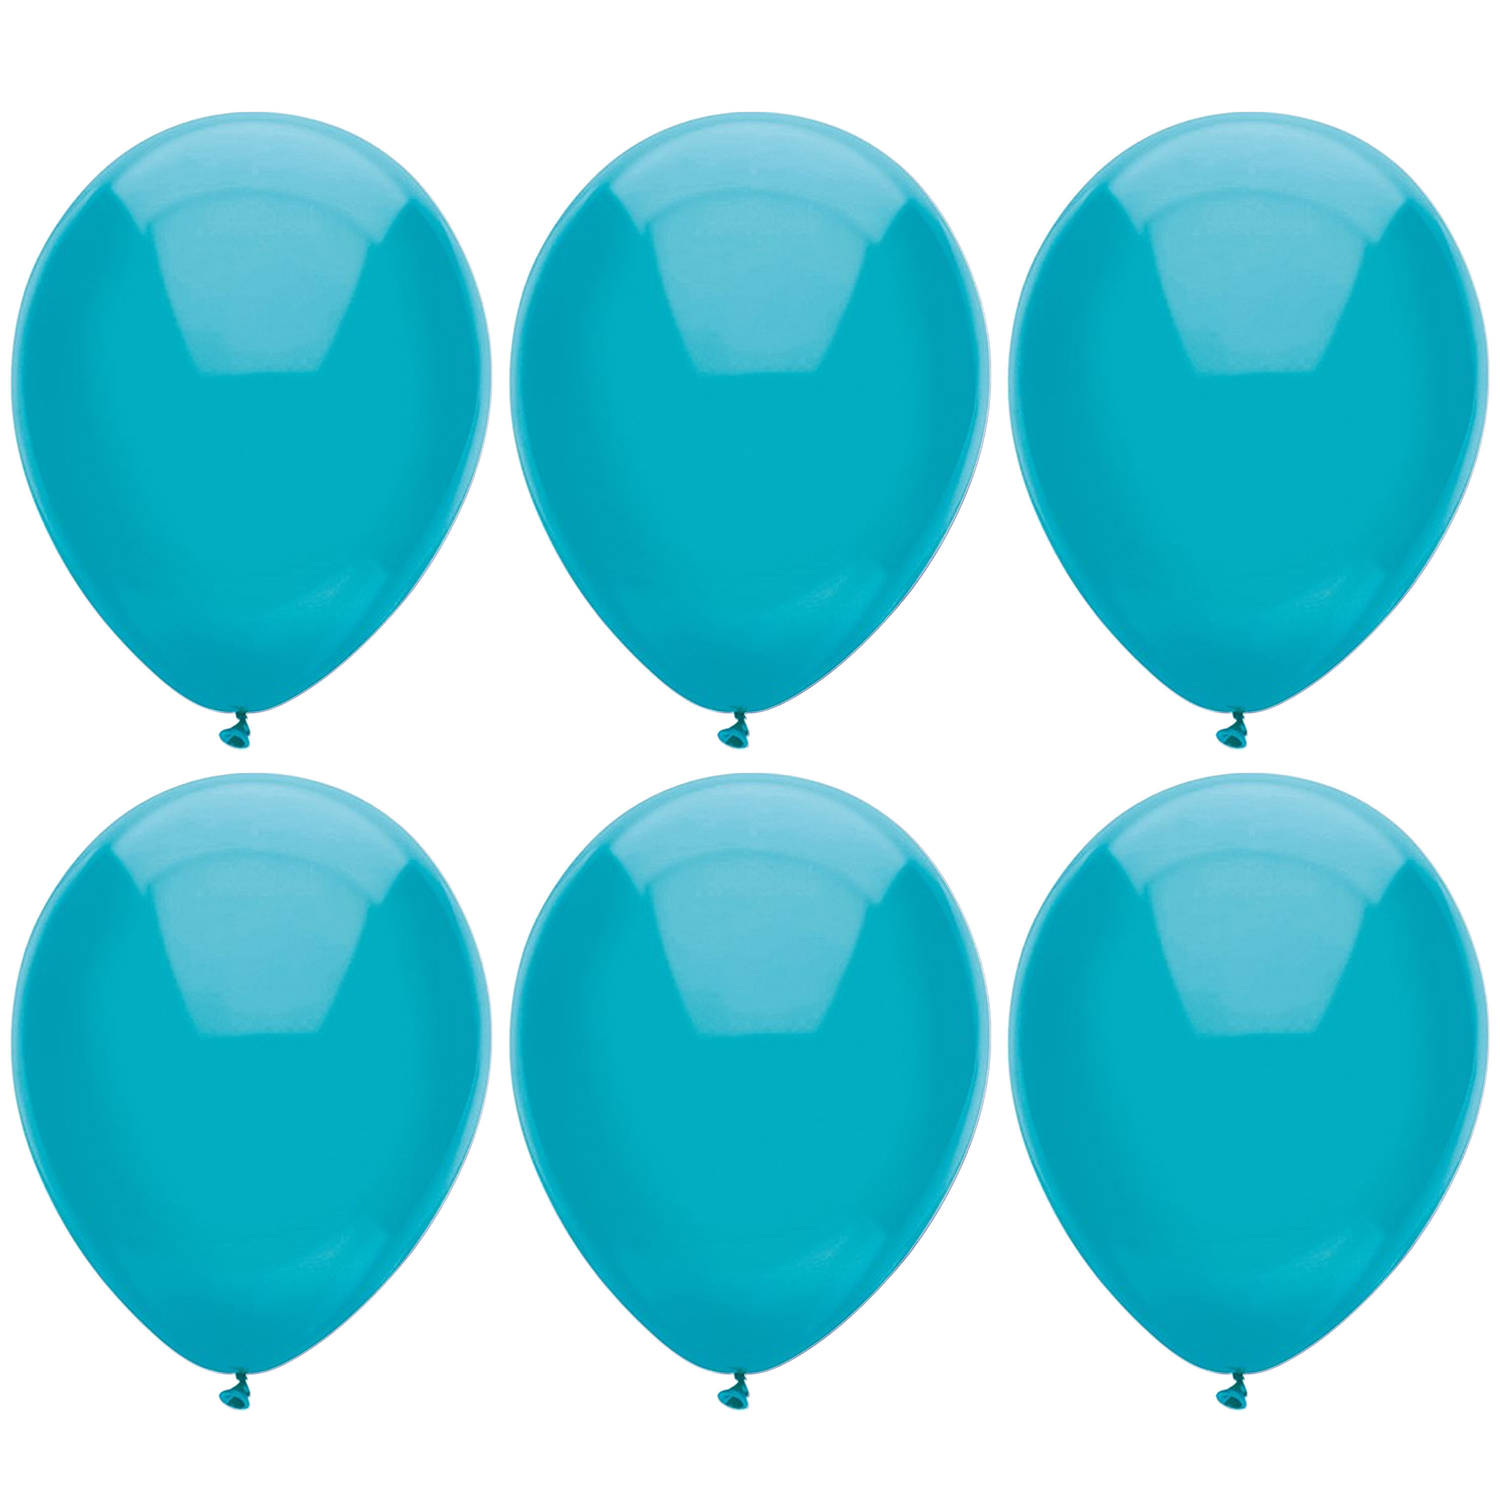 Ballonnen verjaardag/thema feest - 200x stuks - turquoise blauw 29 cm - Ballonnen